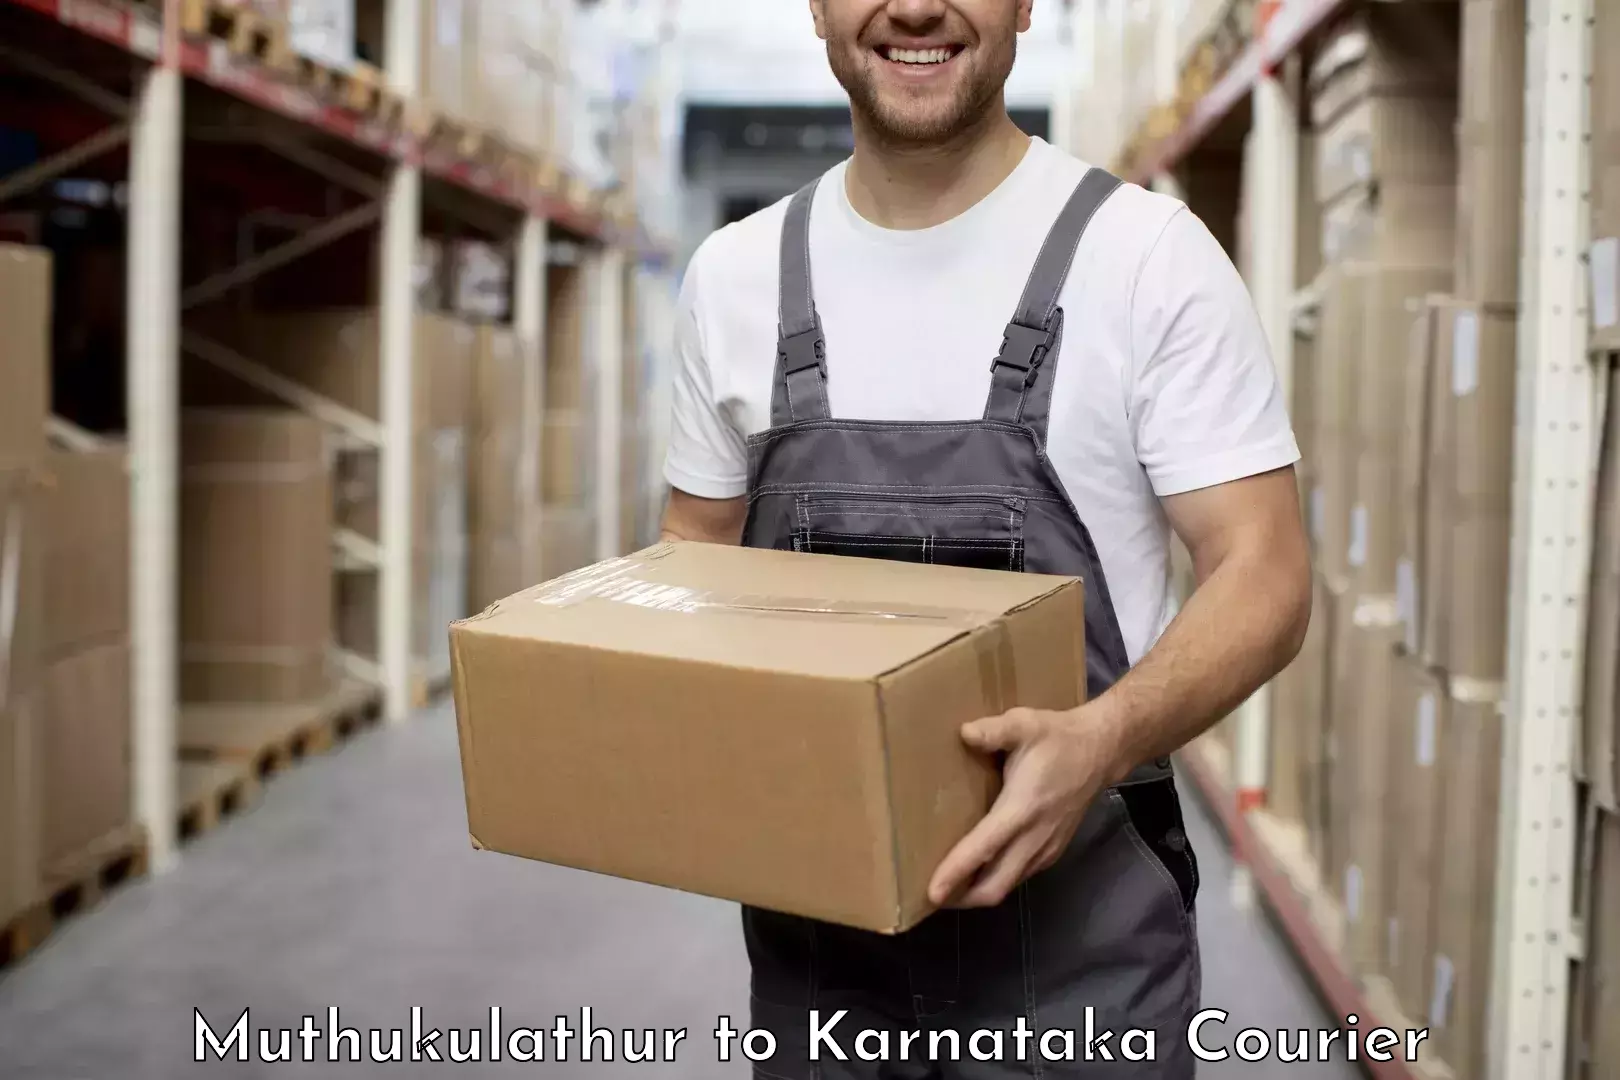 Professional courier handling Muthukulathur to Udupi